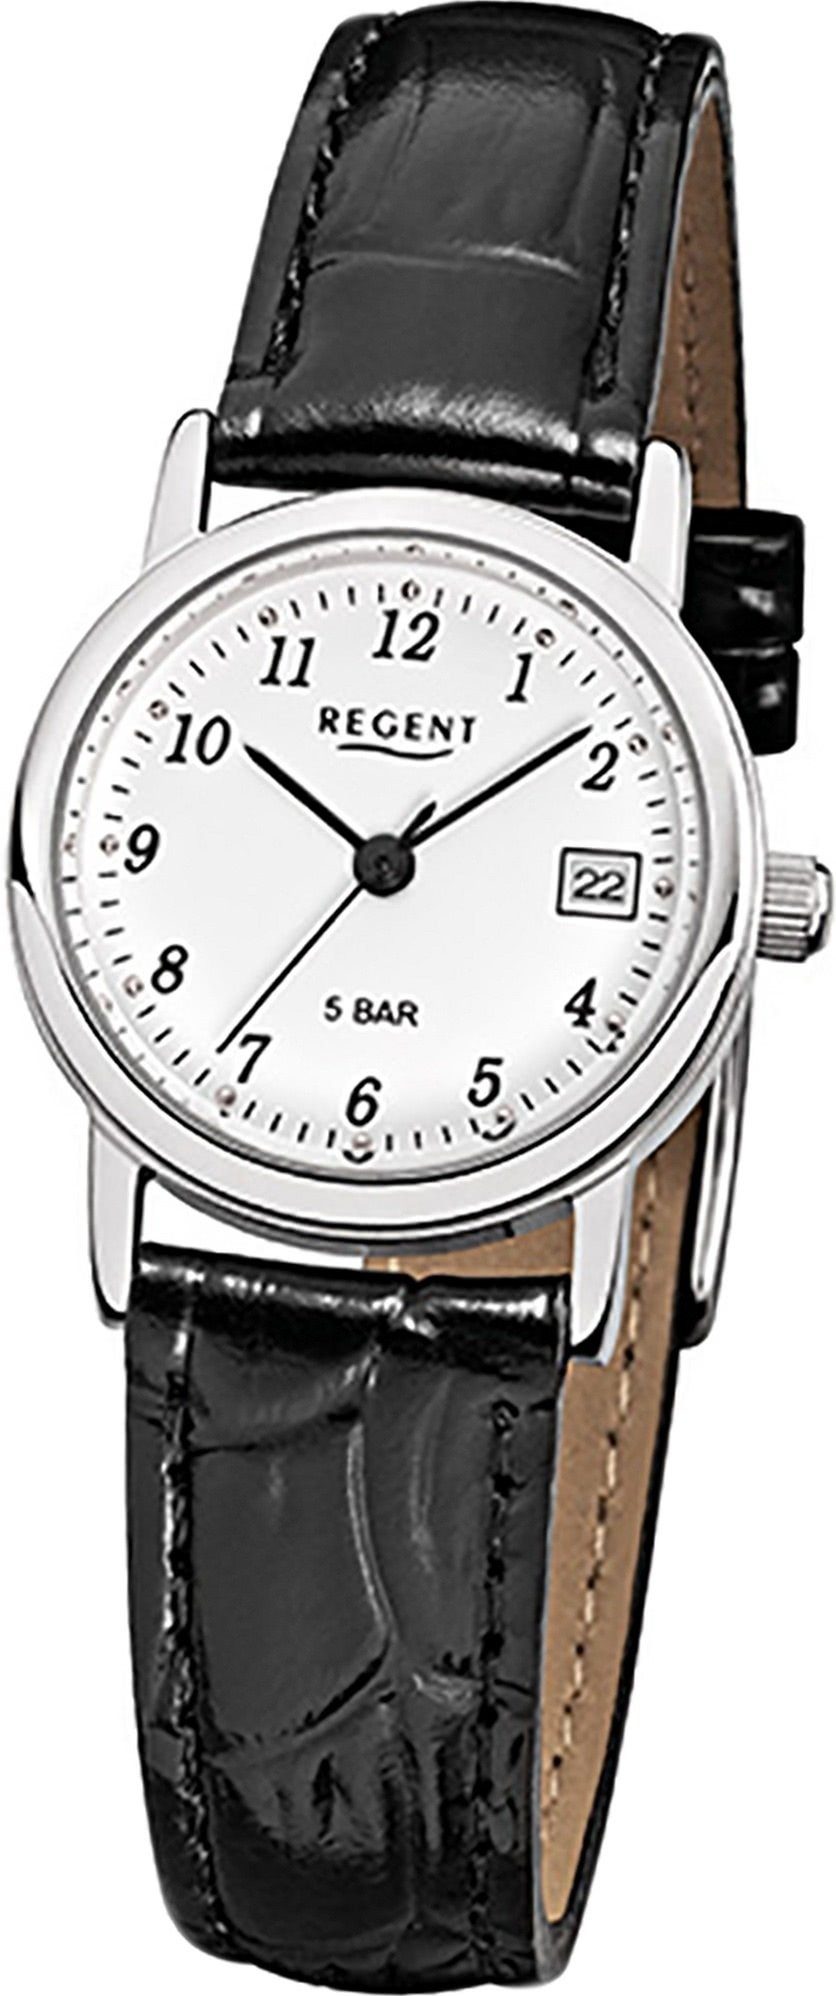 Regent Quarzuhr Regent Leder Damen Uhr F-827 Quarzuhr, Damenuhr Lederarmband schwarz, rundes Gehäuse, klein (ca. 25mm)